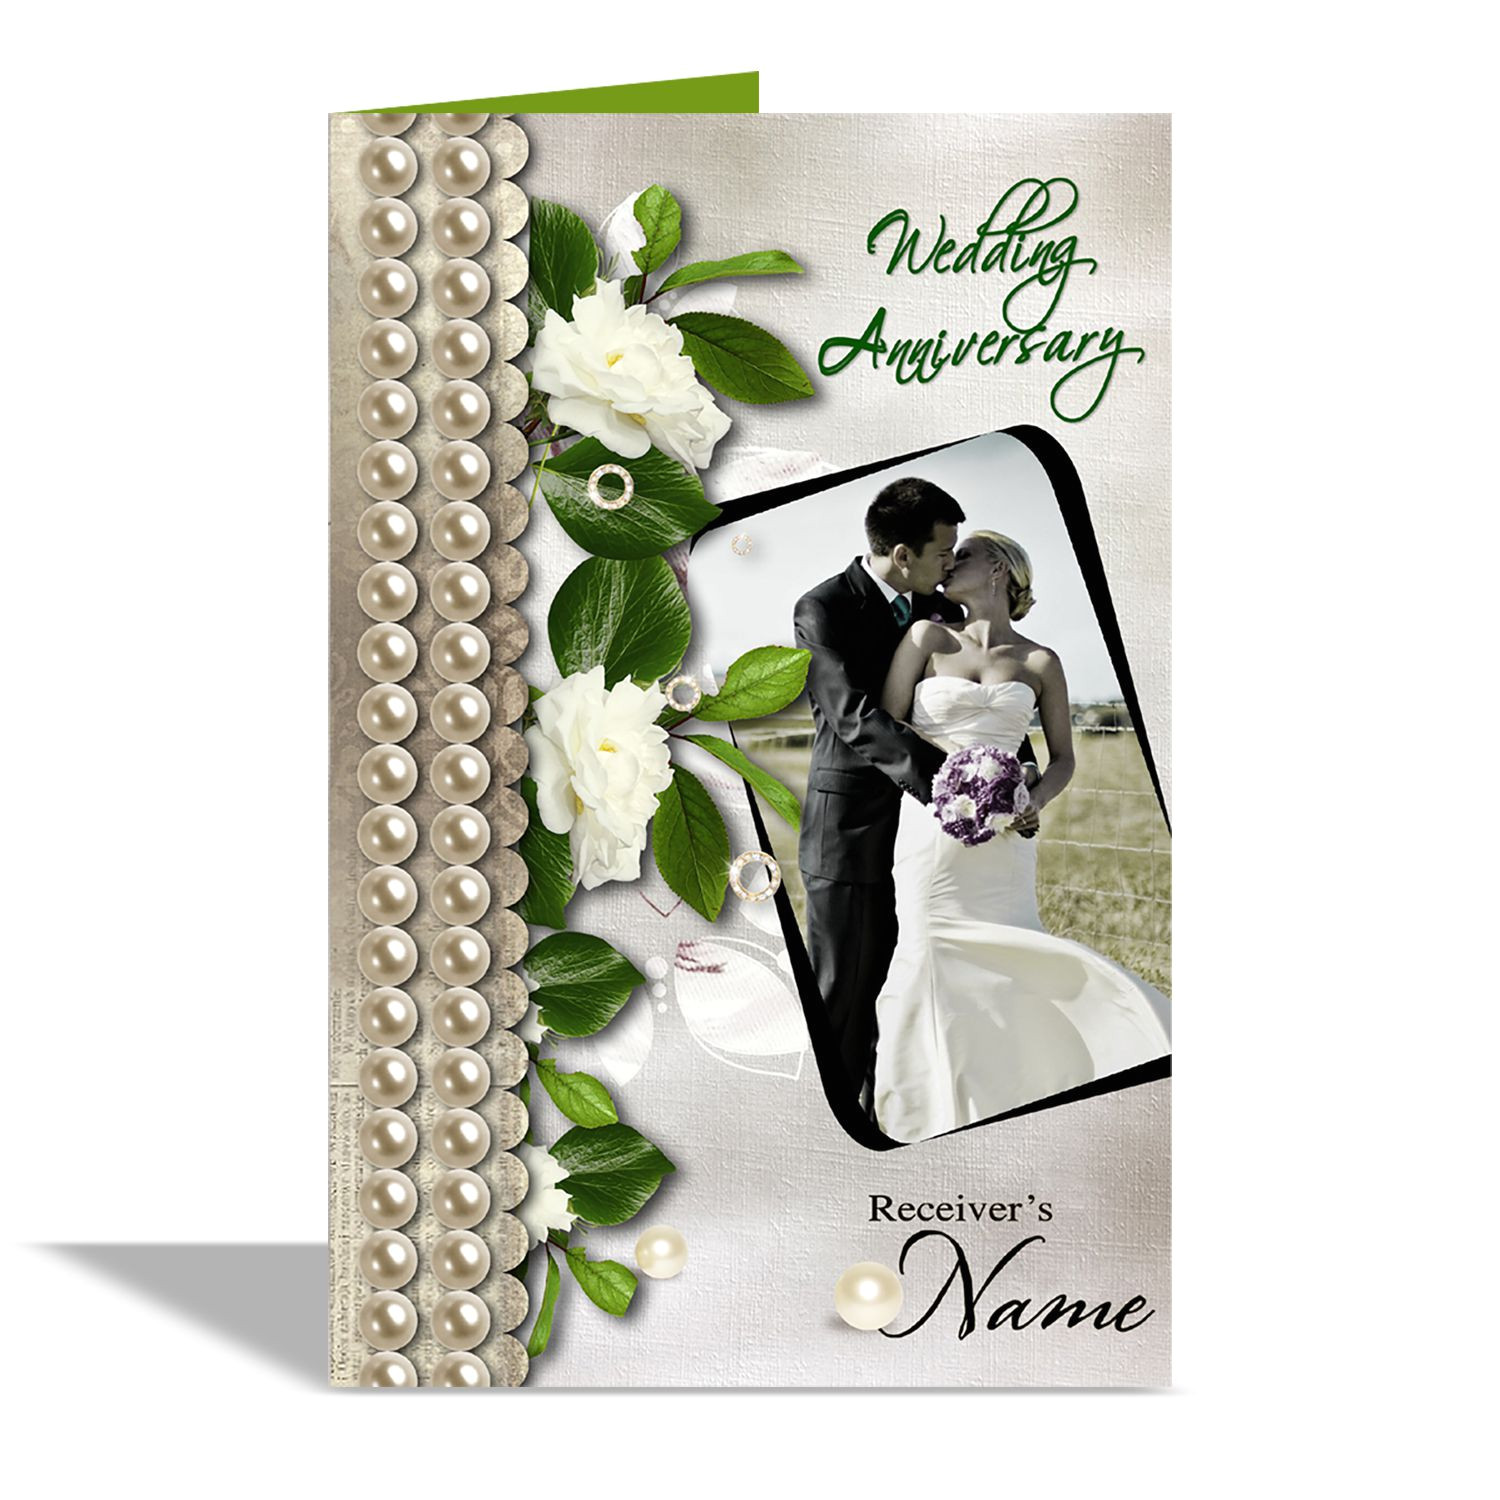 alwaysgift wedding anniversary greeting card sdl197441744 1 071ac jpg